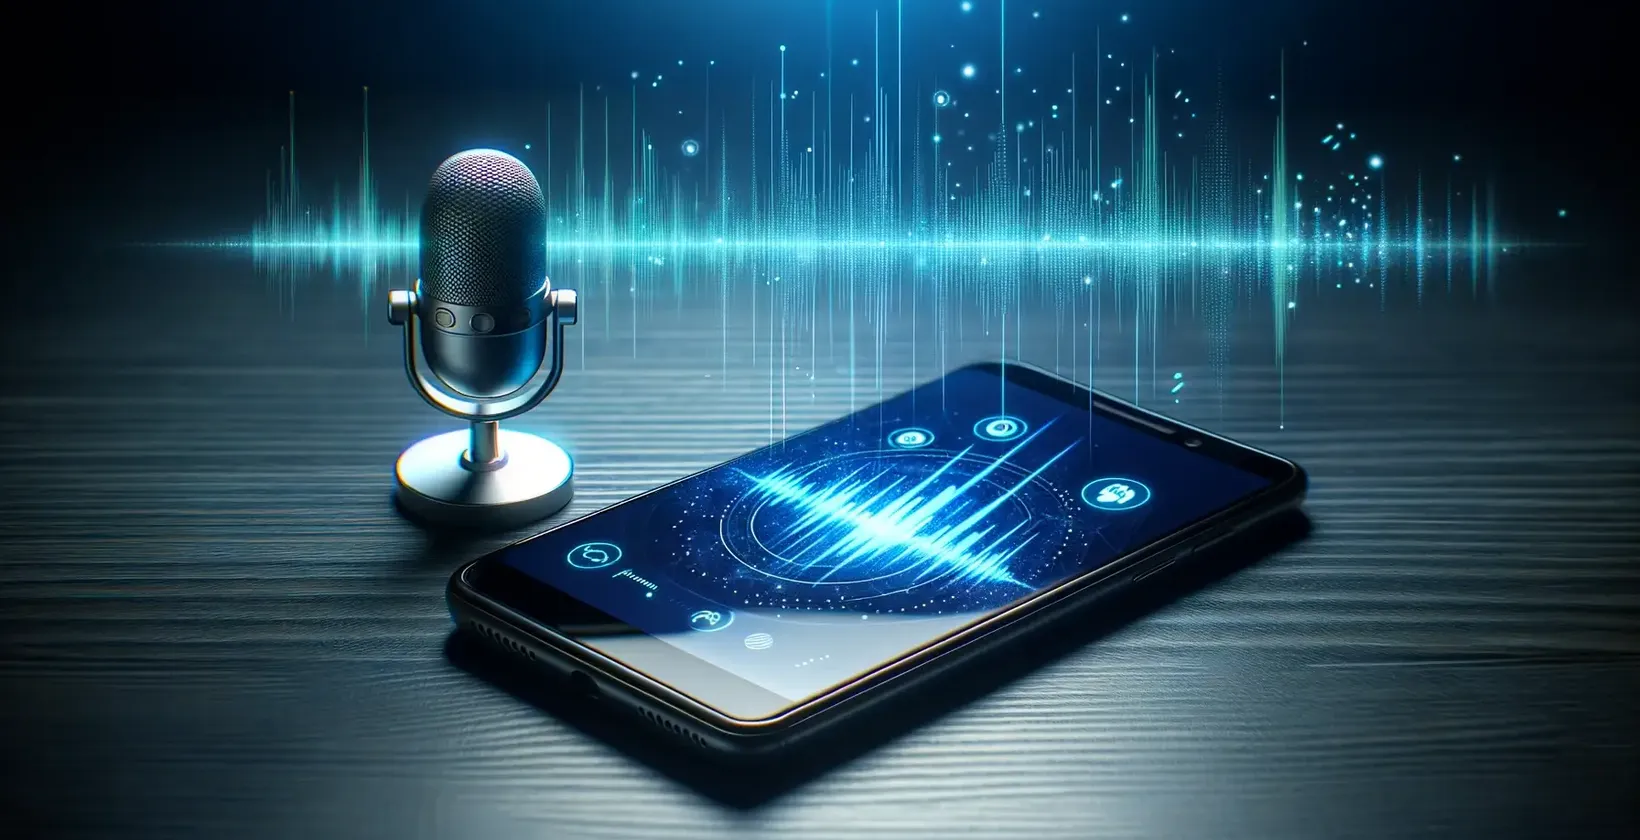 Il moderno microfono si trova accanto a uno smartphone che mostra una grafica vibrante delle onde sonore.